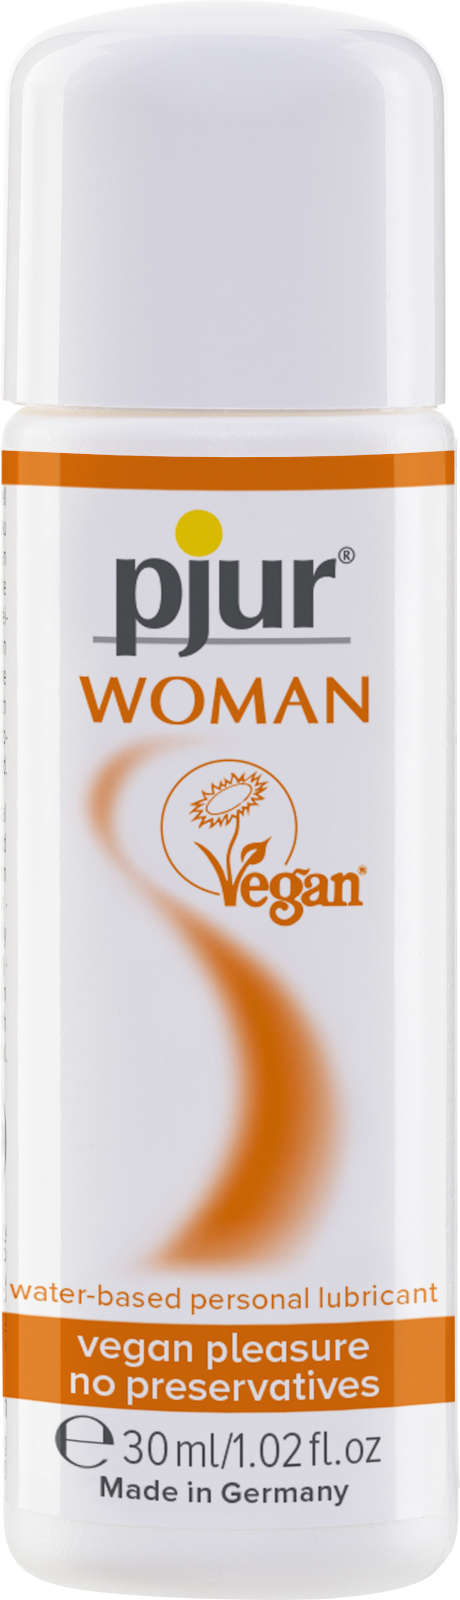 Pjur Woman Vegan Gleitmittel auf Wasserbasis 30ml | Veganes Gel speziell für SIE